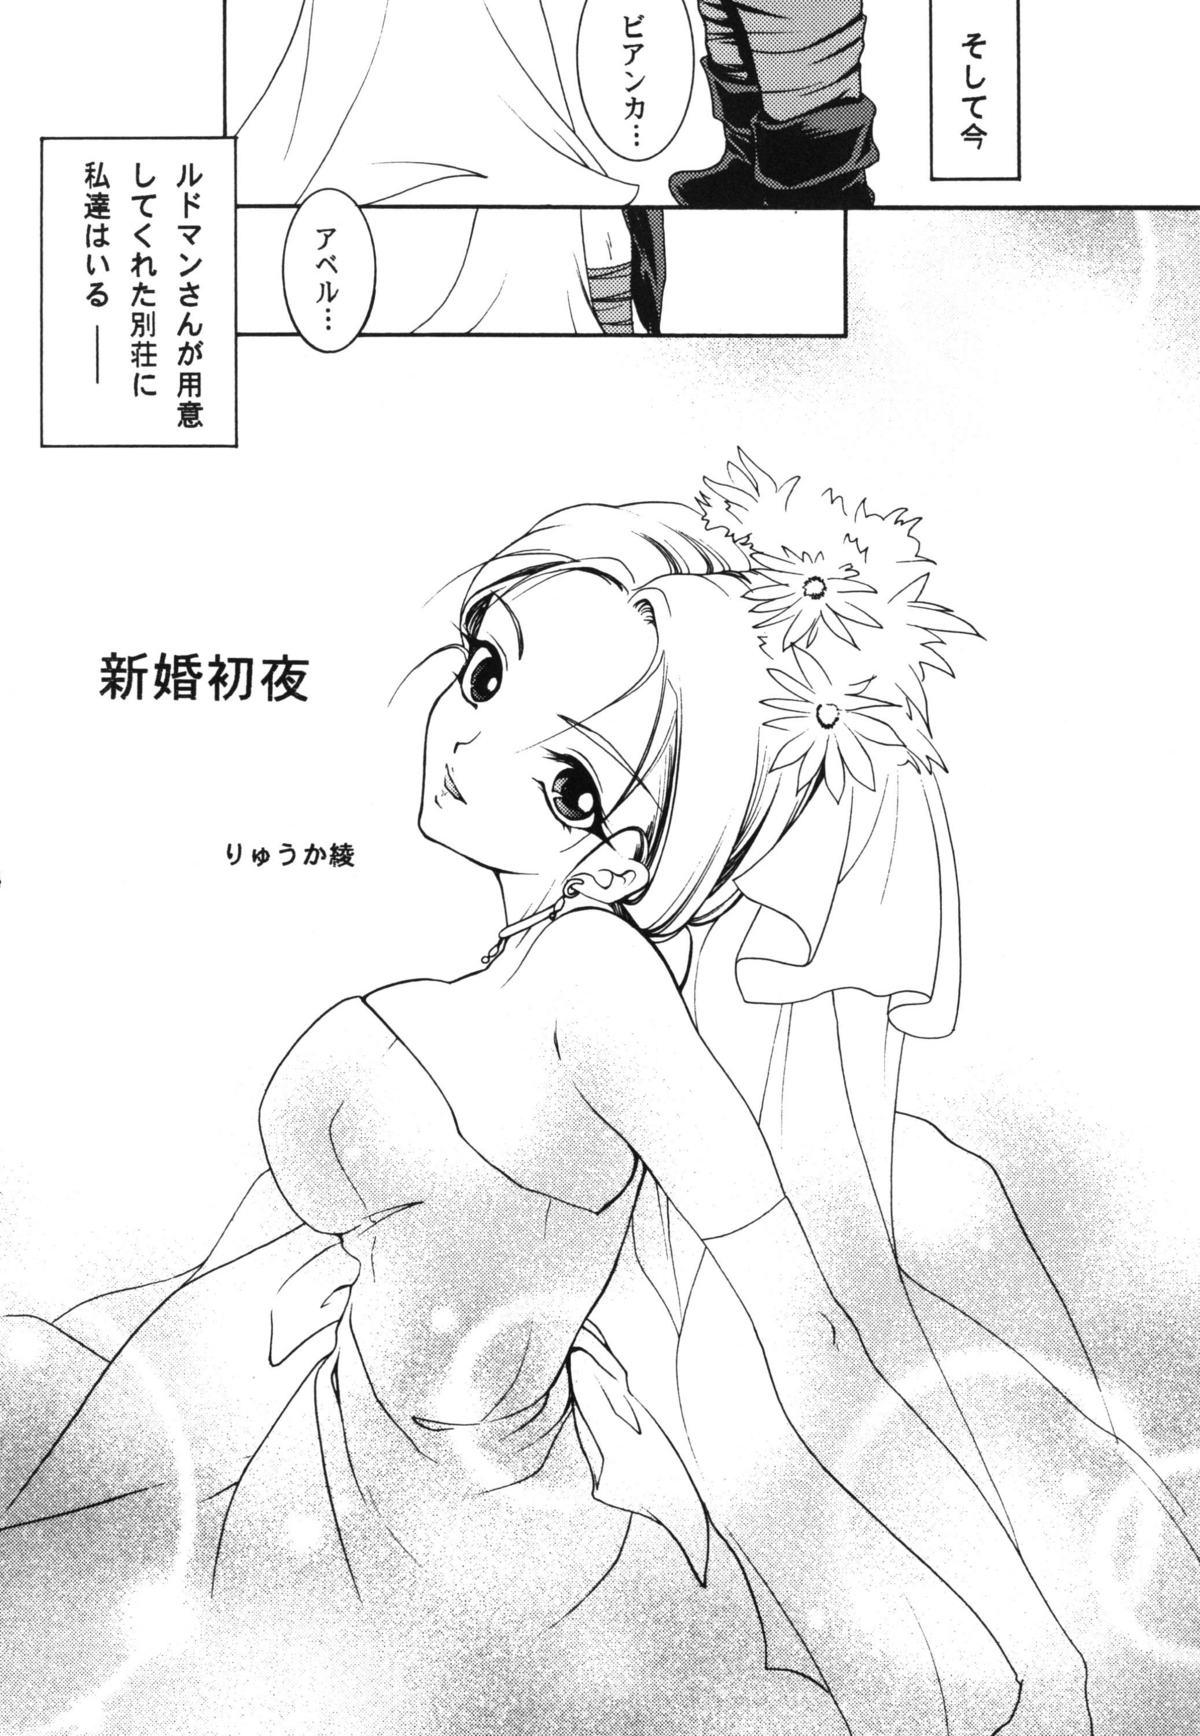 Small Tits Shinkon Shoya - Dragon quest v Teenie - Page 4